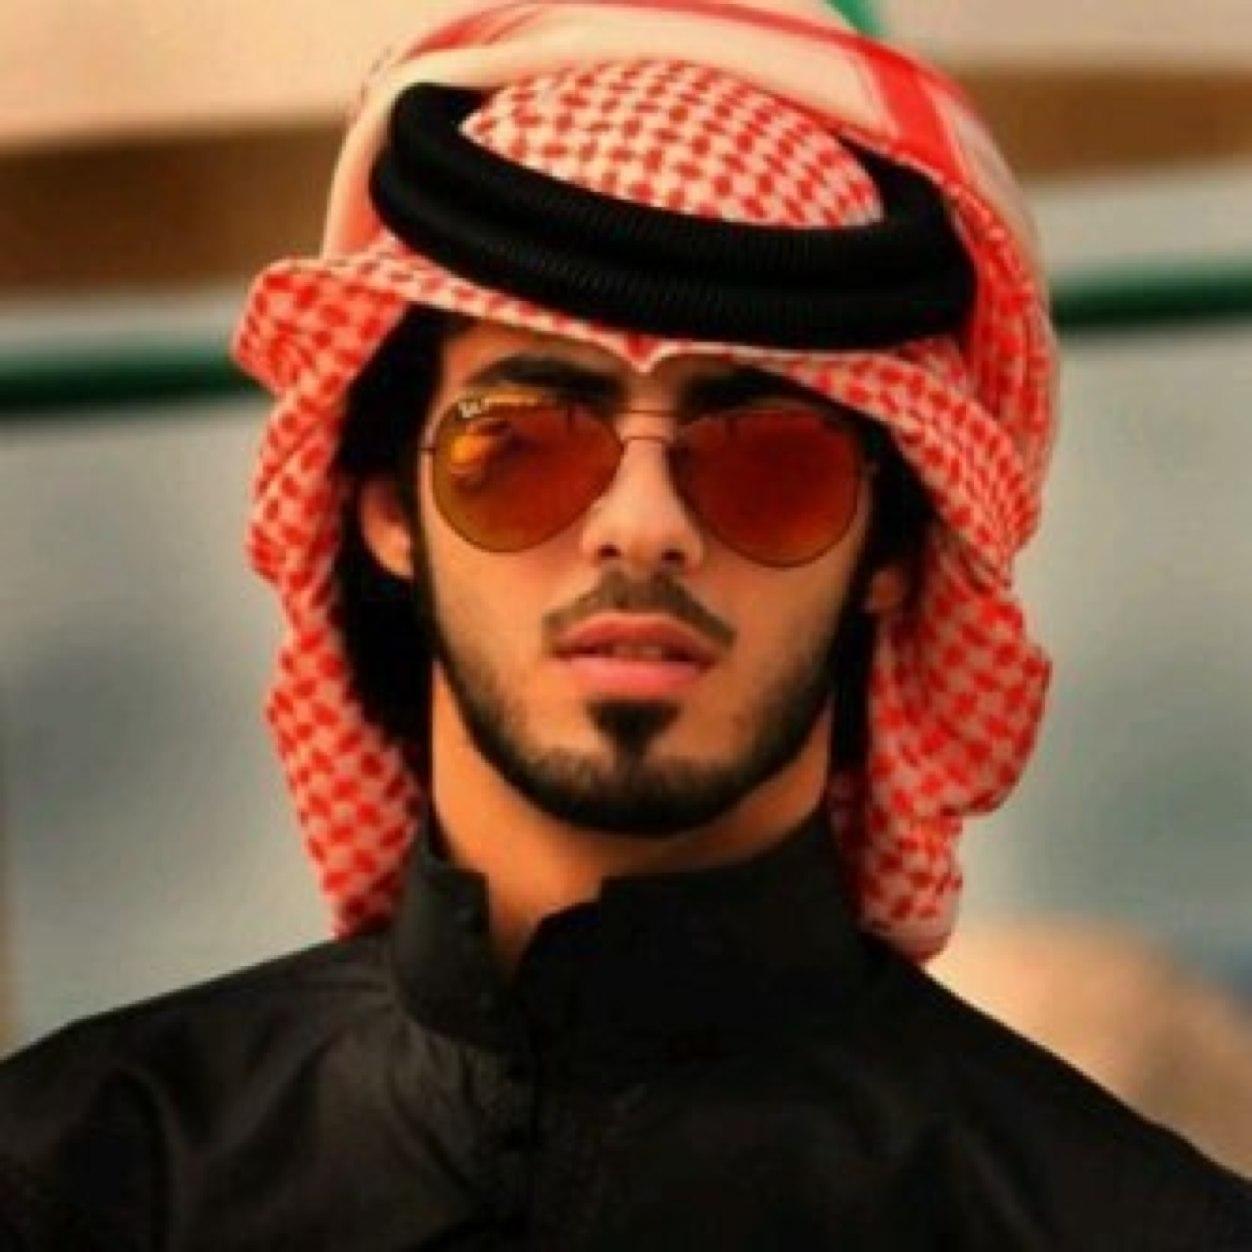 صور رجال سعوديين احلي شباب المملكة العربية السعودية صور جميلة